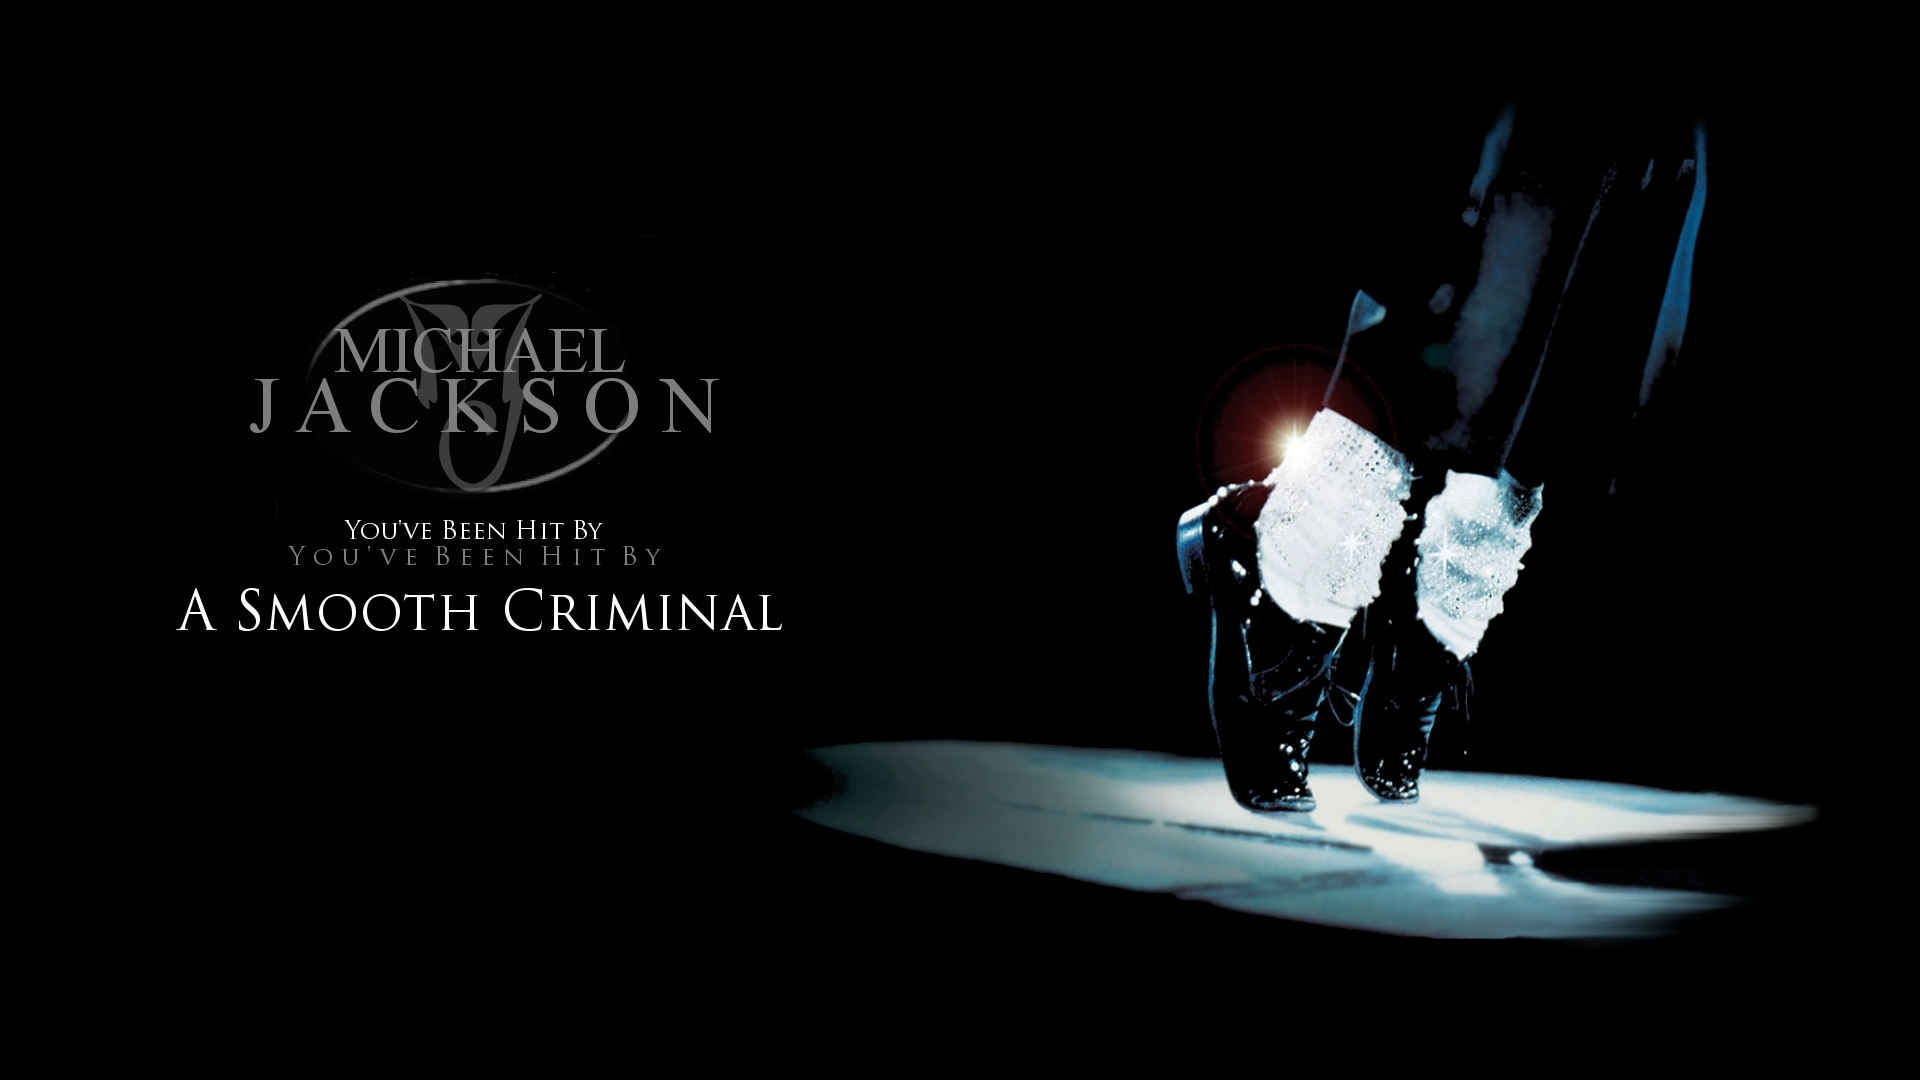 Michael Jackson SMOOTH CRIMINAL   Michael Jackson